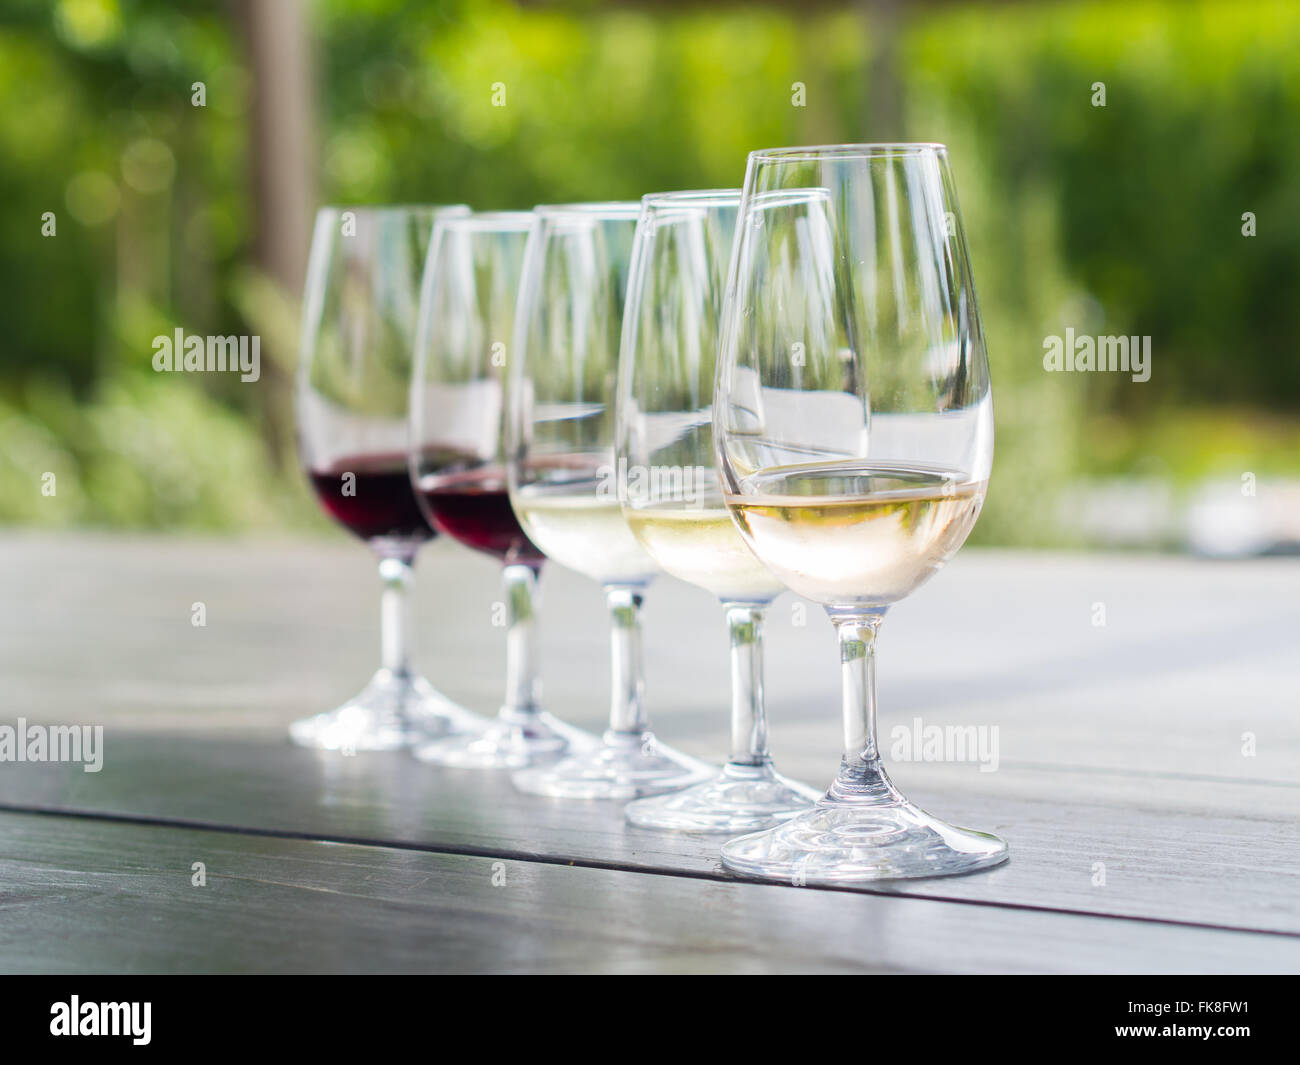 Dégustation de vins à Stellenbosch, Afrique du Sud : blanc de noir, chardonnay, sauvignon blanc, merlot, cabernet sauvignon. Banque D'Images